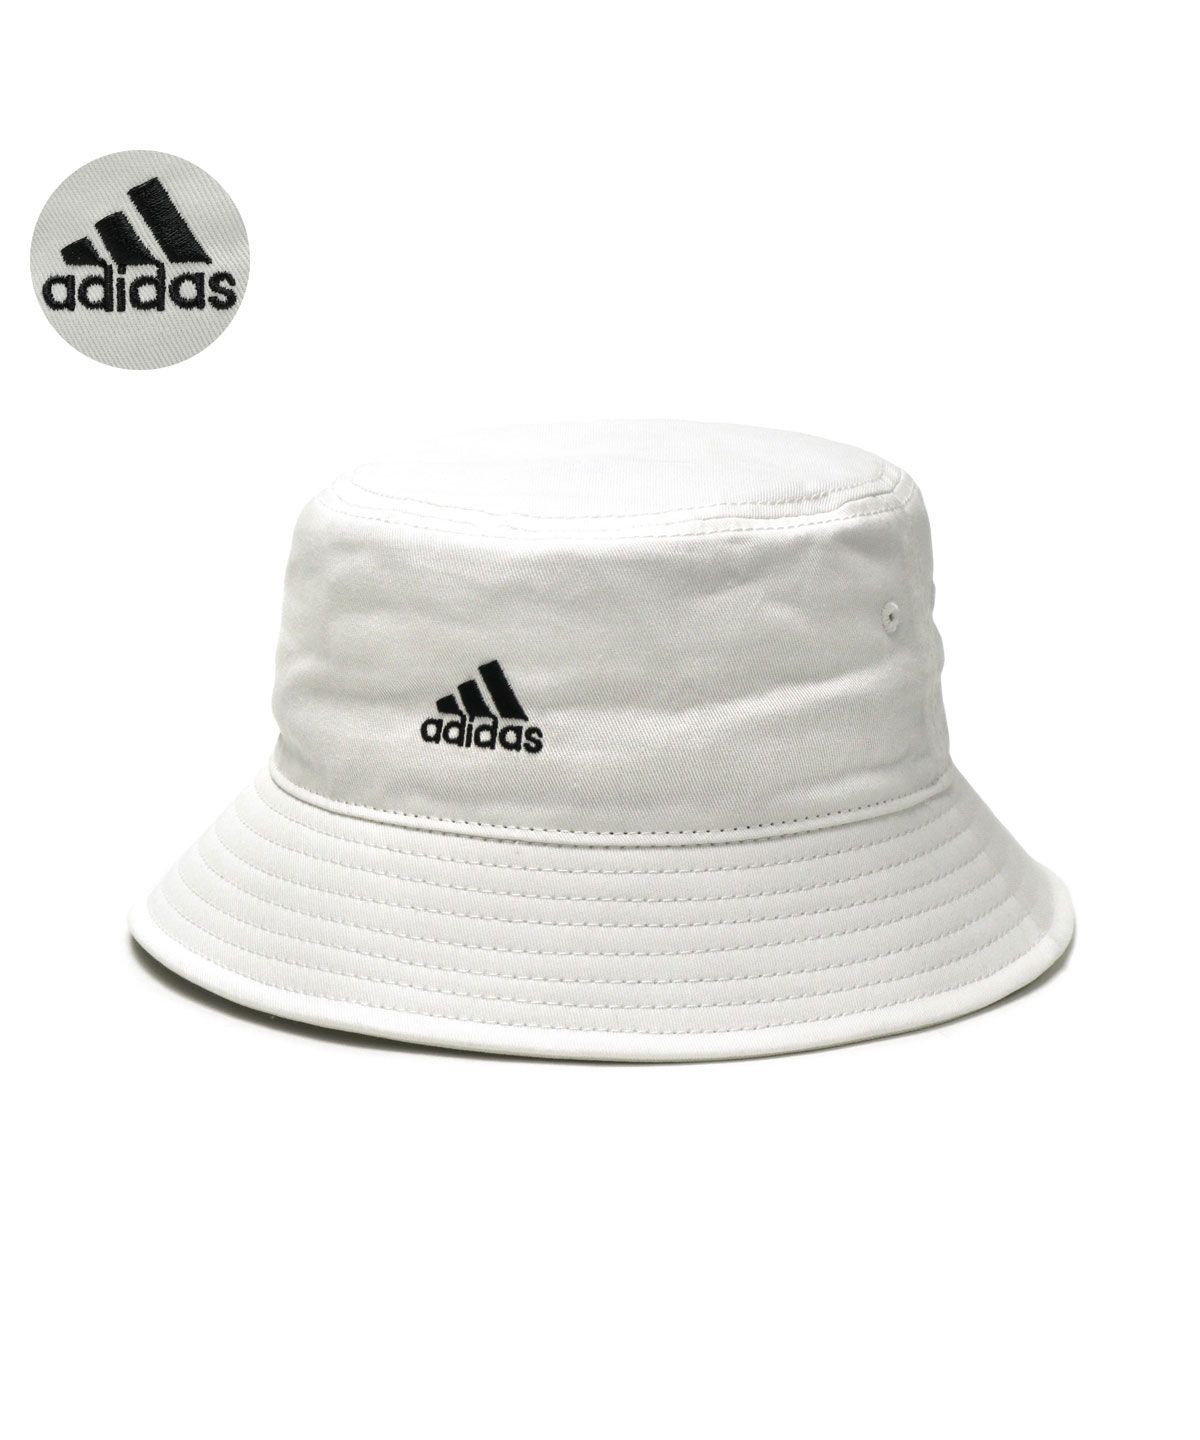 アディダス バケットハット adidas ADS BOS CT BUCKET HAT 帽子 